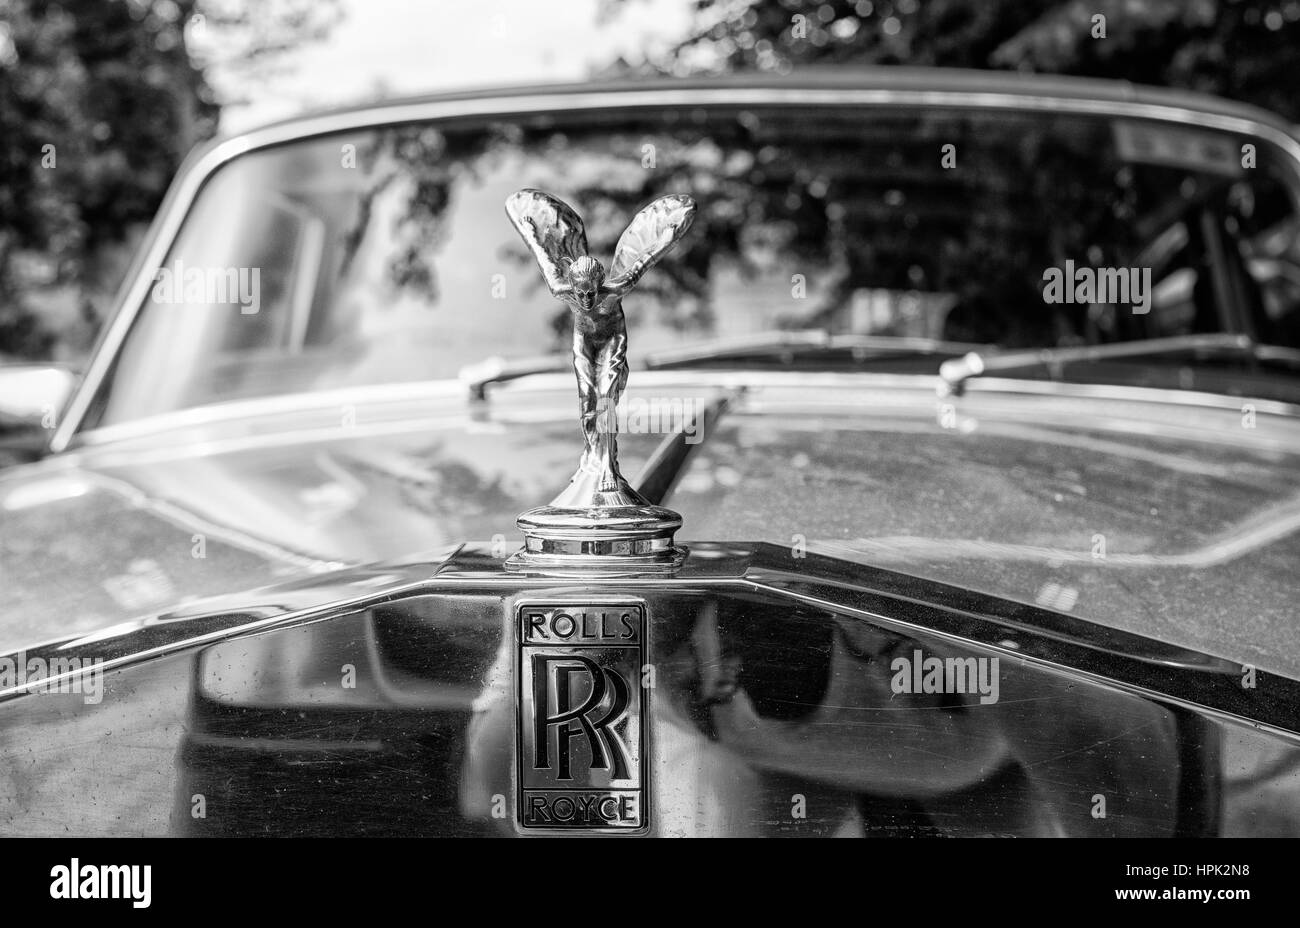 Calandre de Rolls Royce et de l'esprit de l'Ecstasy Mascot Banque D'Images